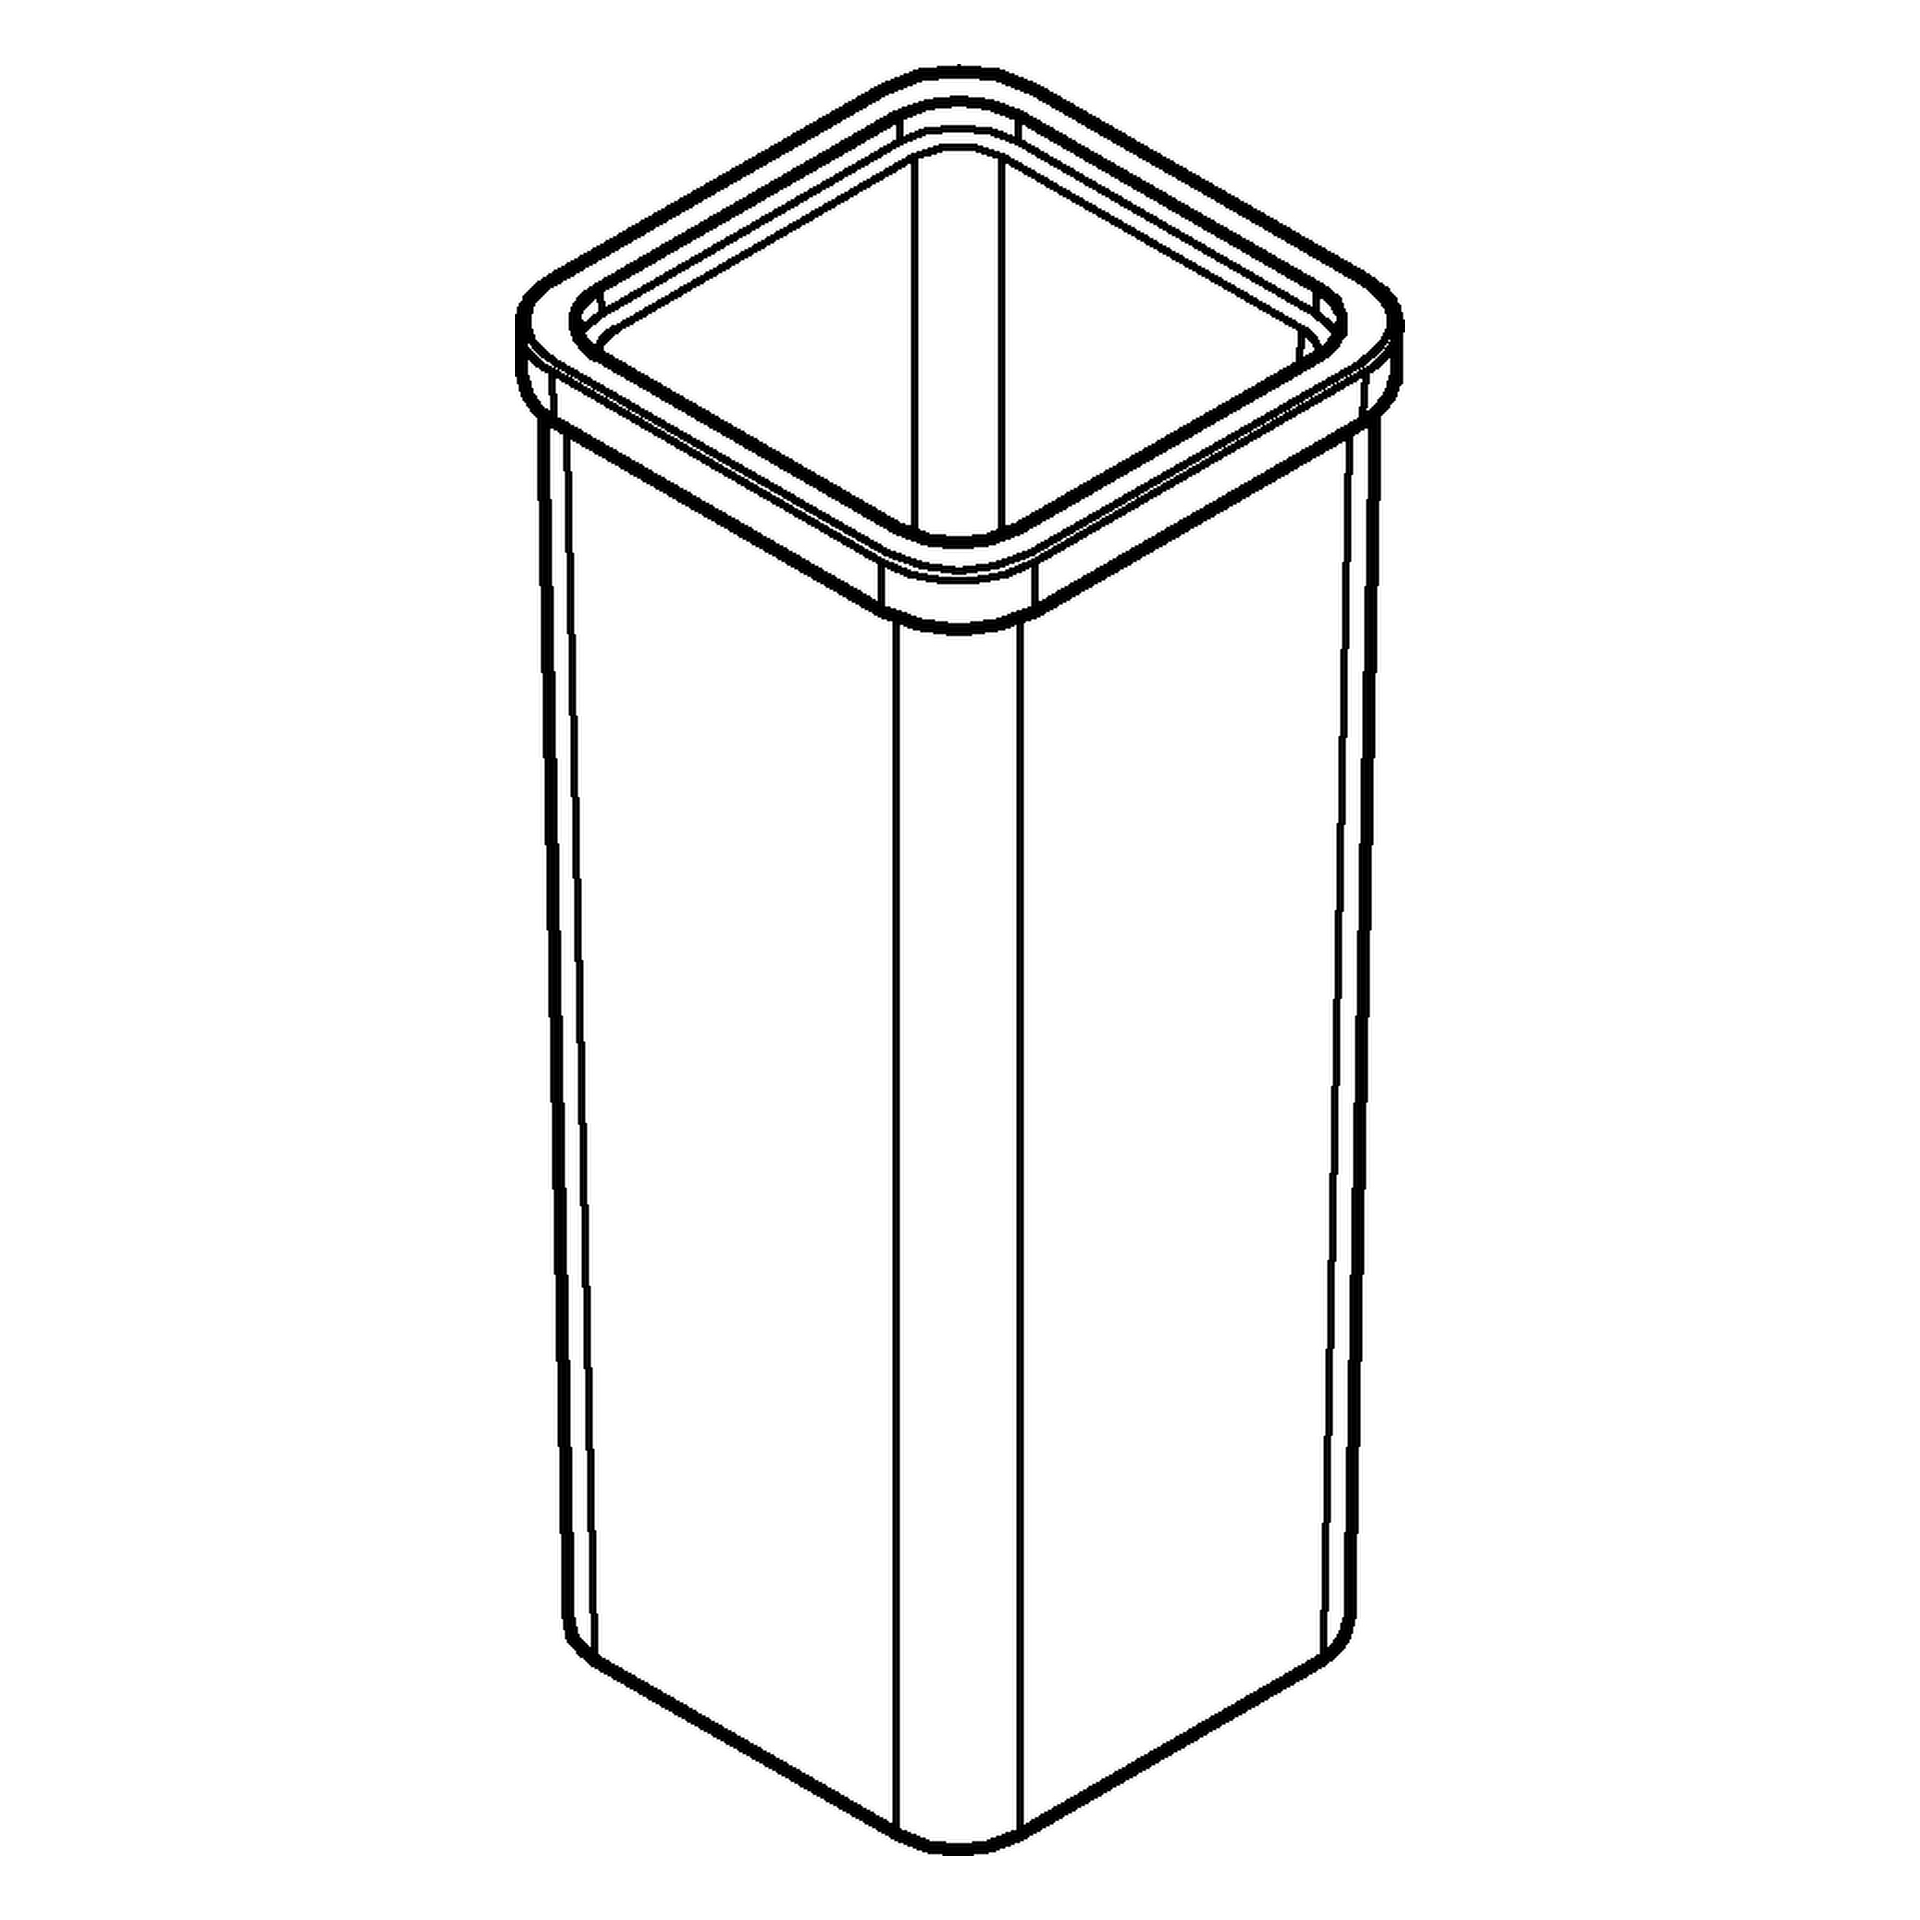 Ersatzglas 40867, für Selection Cube Toilettenbürstengarnitur